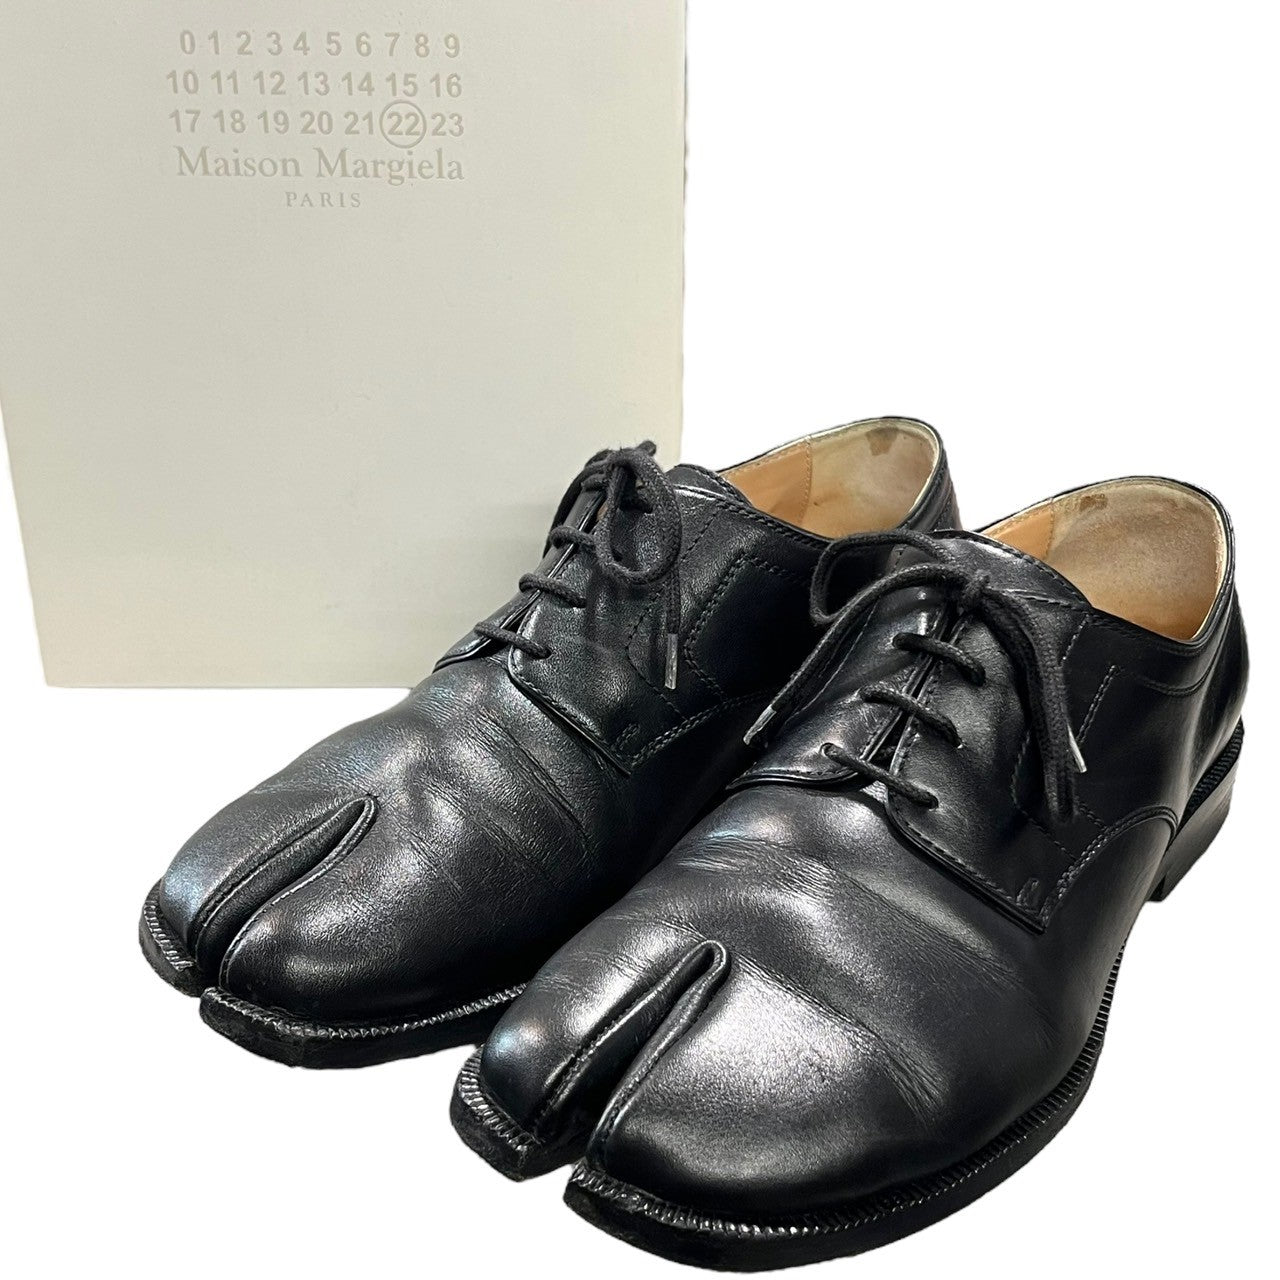 MAISON MARGIELA(メゾンマルジェラ) Tabi lace up shoes 足袋 レースアップシューズ  S34WQ0021 SIZE 38(24.0～25.0cm程度) ブラック 革靴 ドレスシューズ